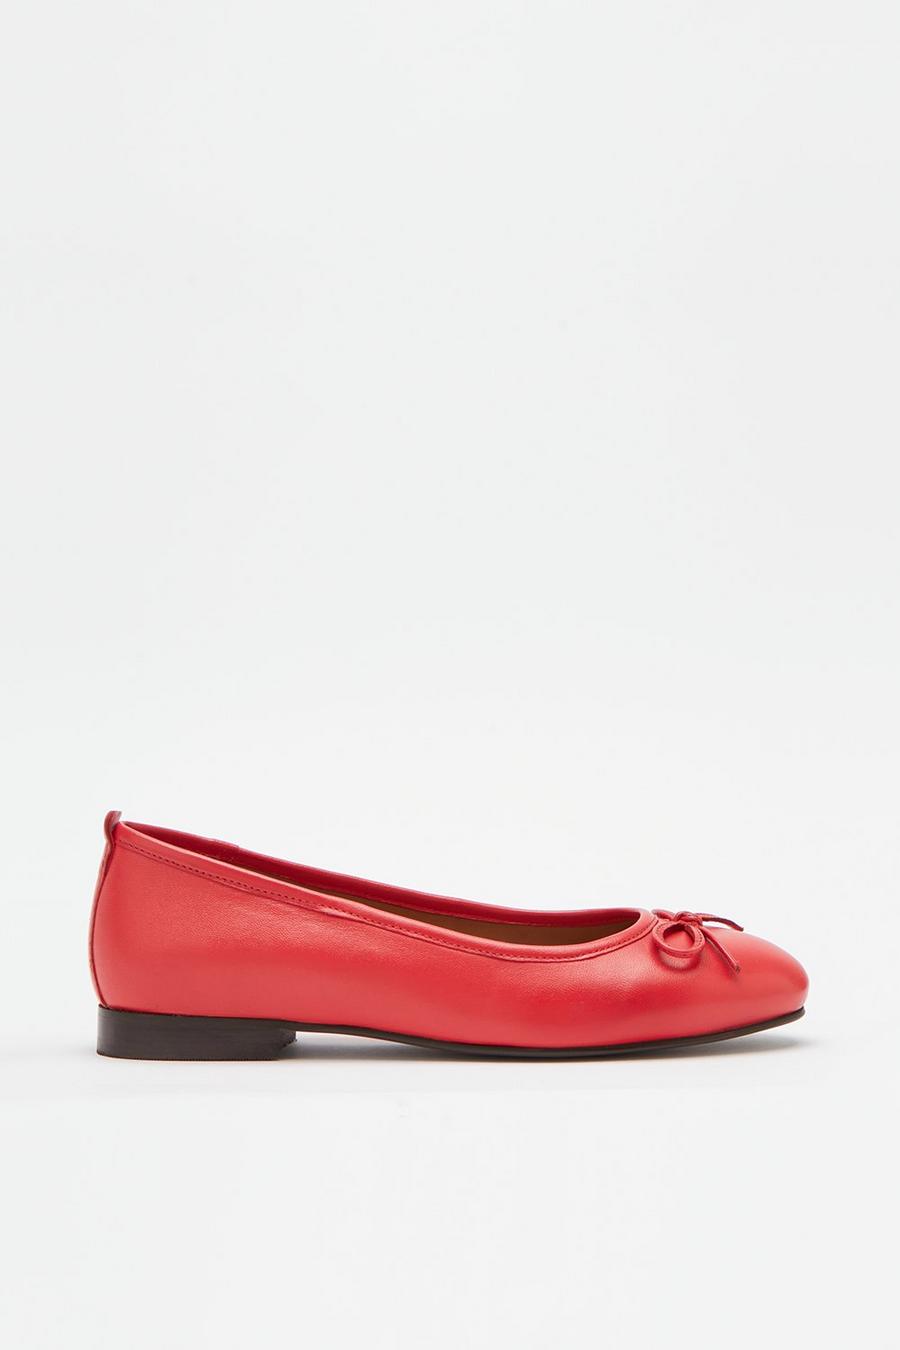 Pump Shoes | Ballet Pump Shoes | Dorothy Perkins UK